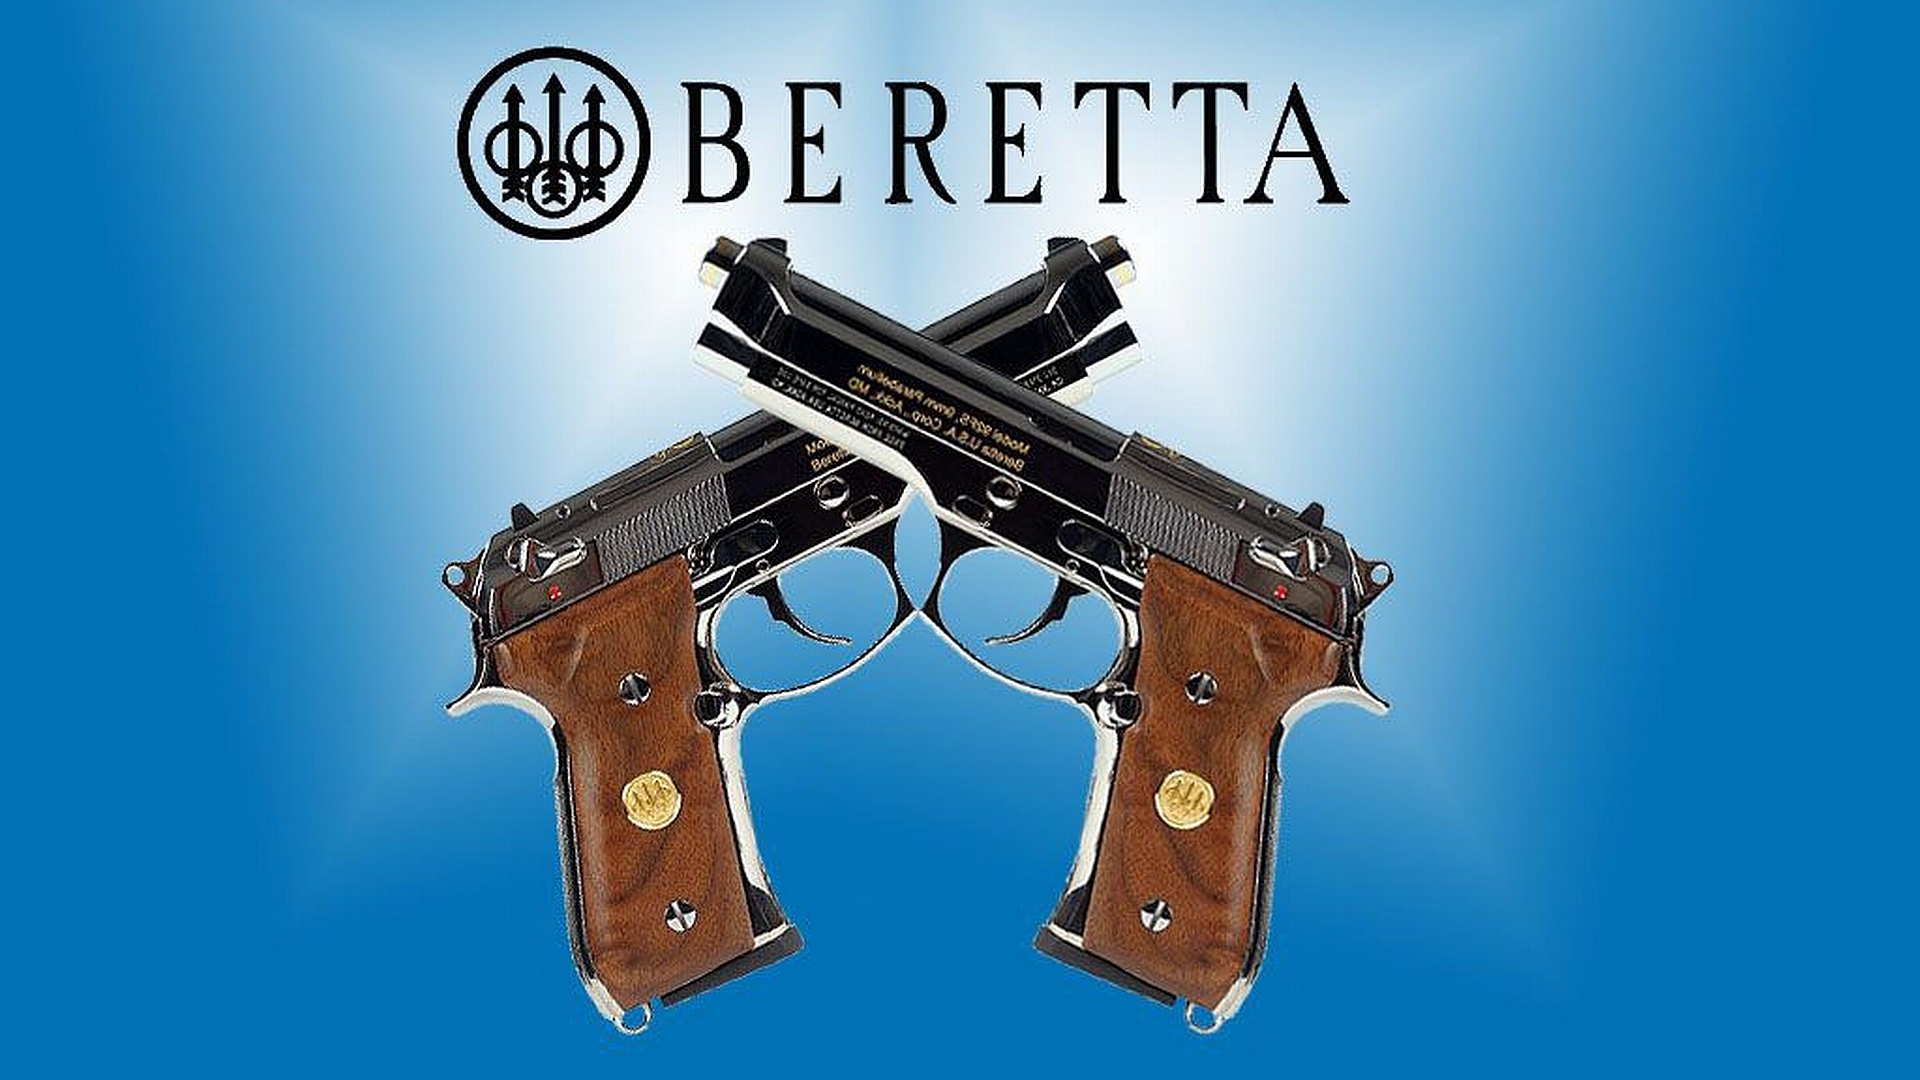 12 Beretta Pistol HD Wallpapers | Backgrounds - Wallpaper Abyss